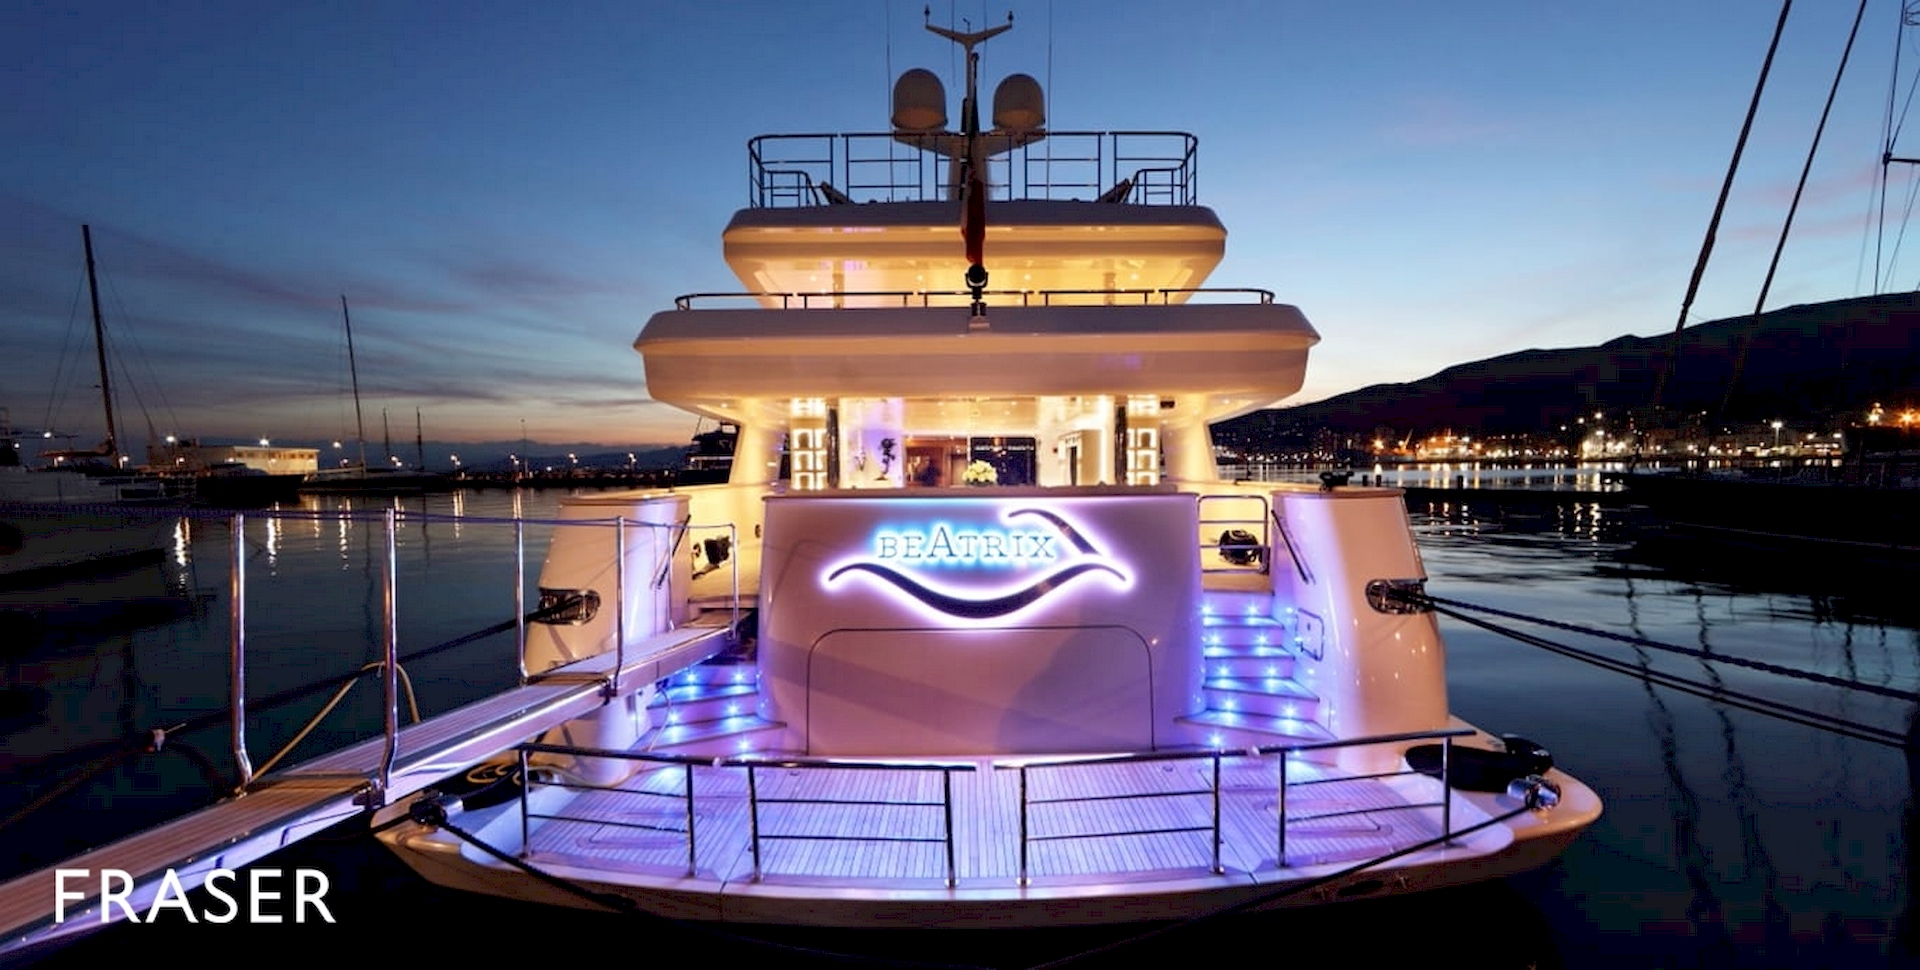 beatrix-luxury-yacht-imbarcazione-lusso-arredata-dal-gruppo-rodi